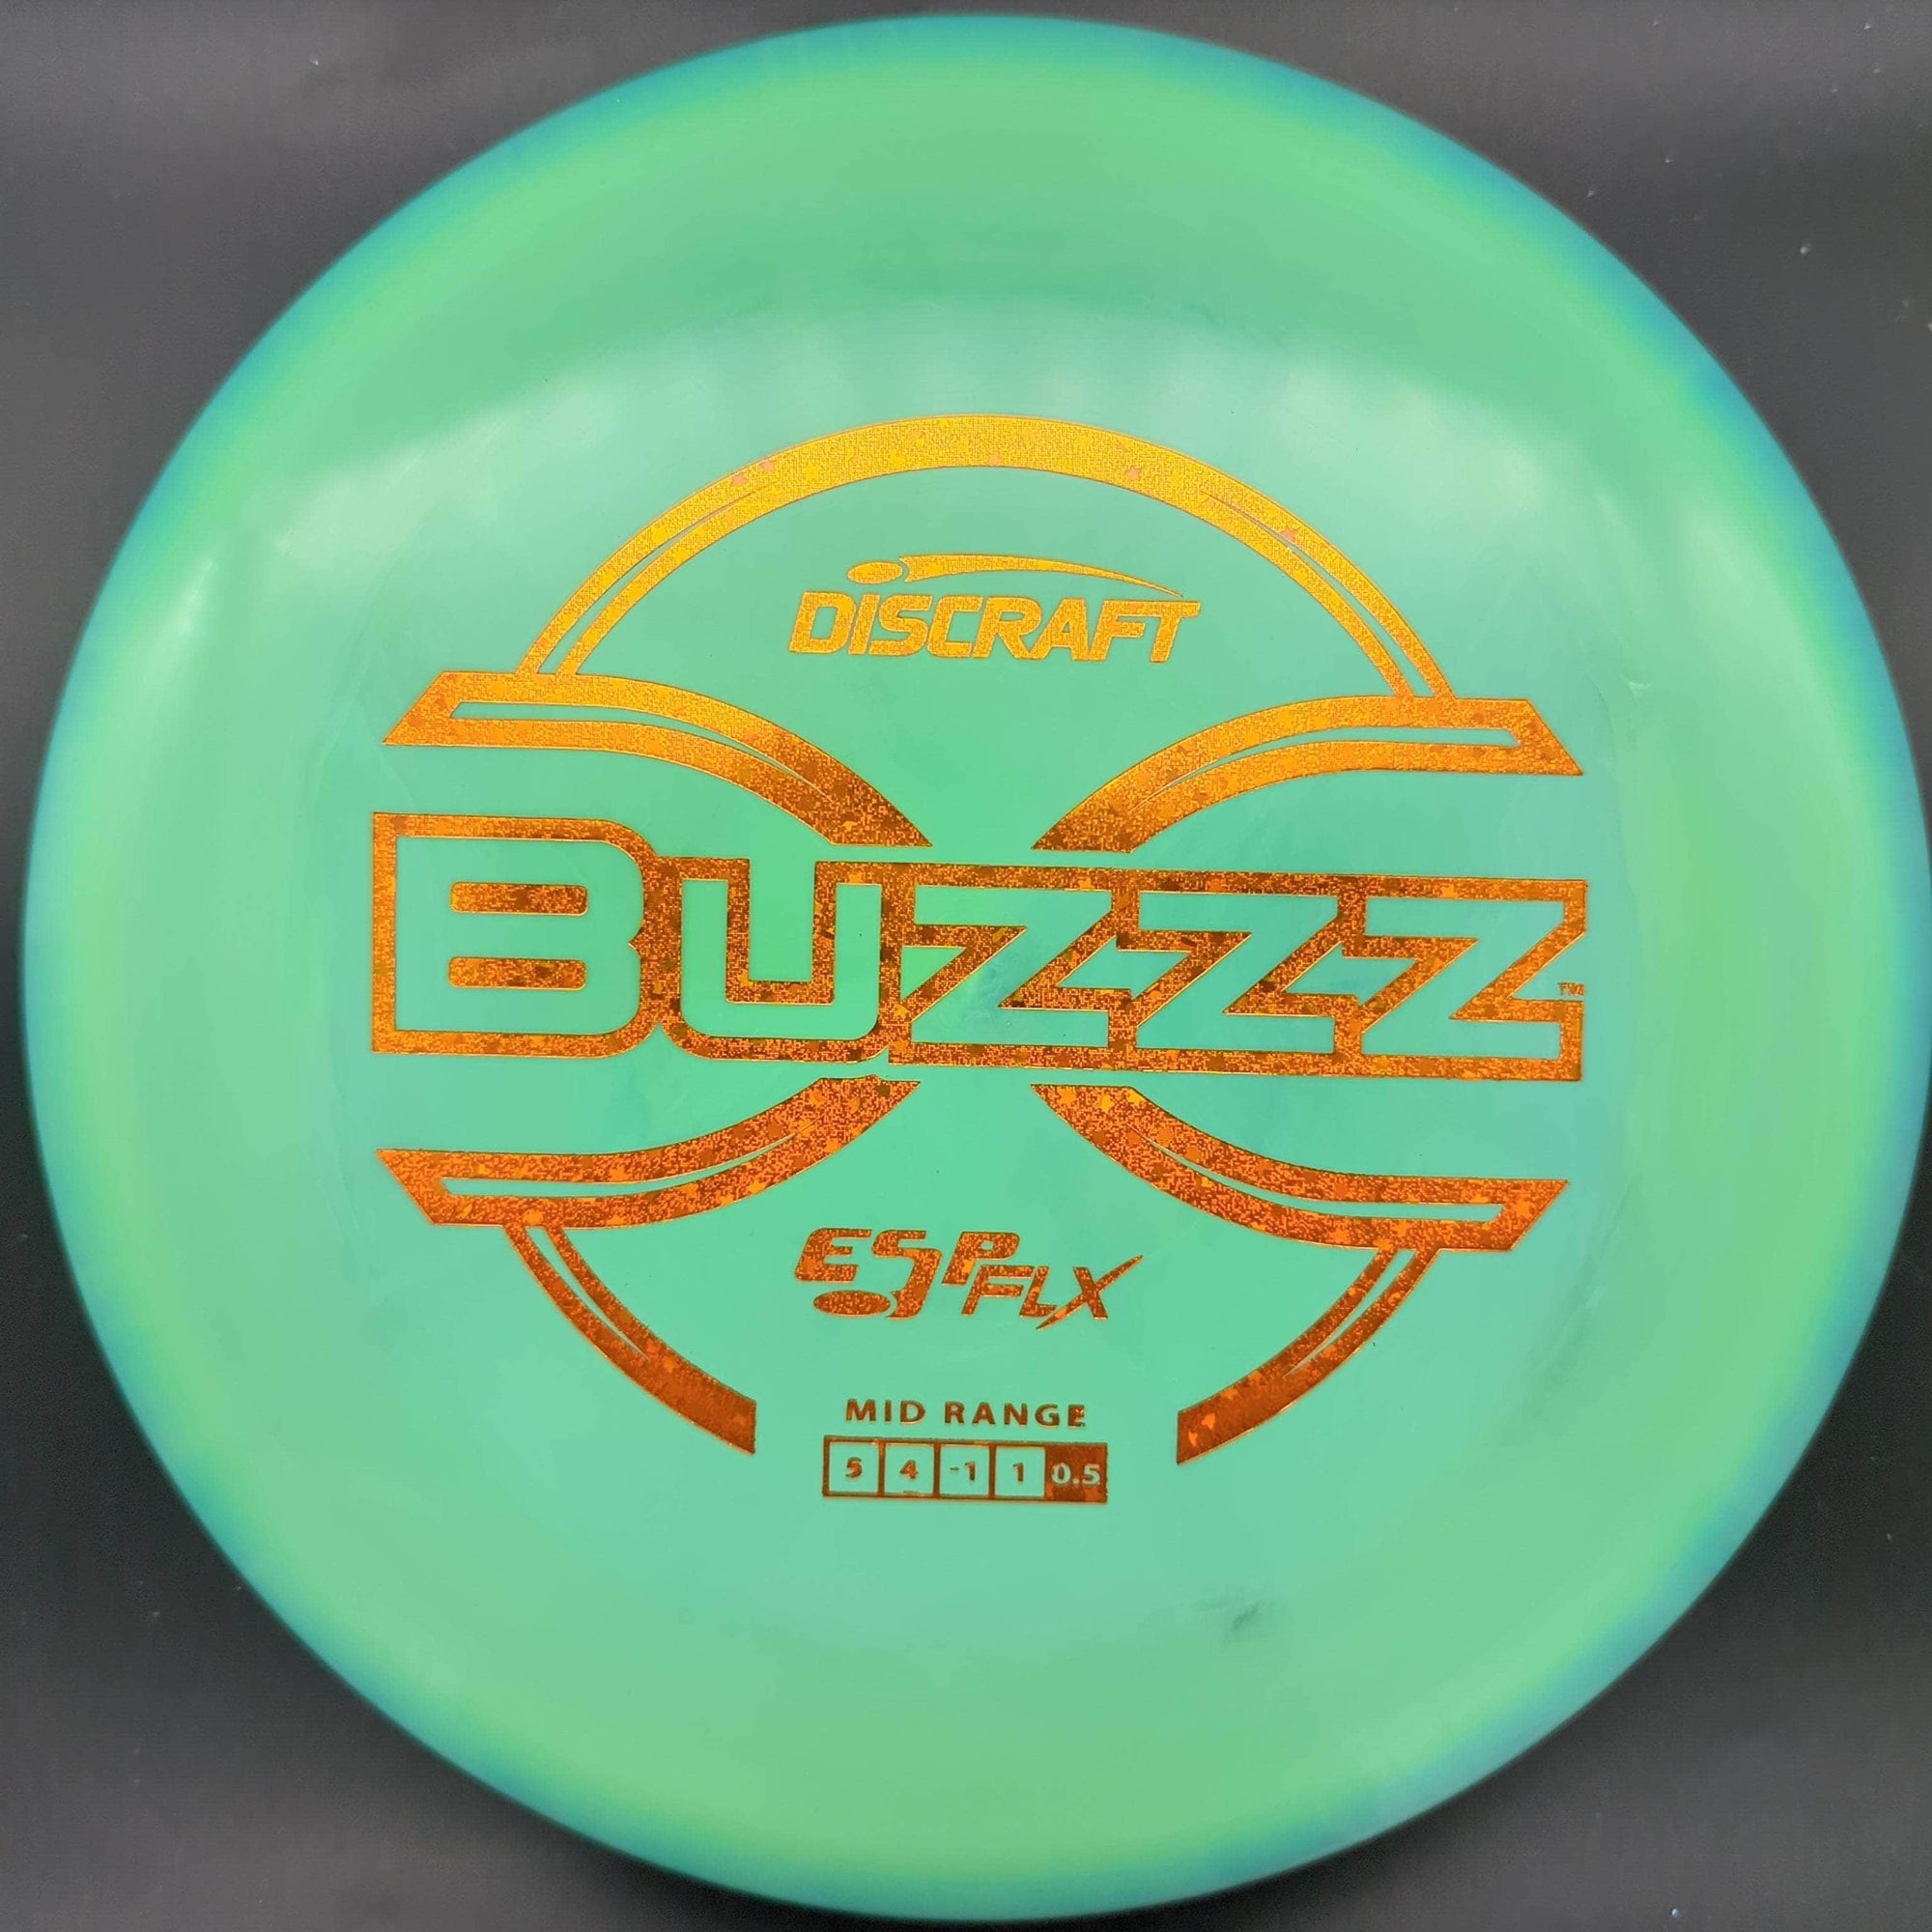 Discraft Mid Range Blue/Green Orange Glitter Stamp 177+ Buzzz, ESP Flx